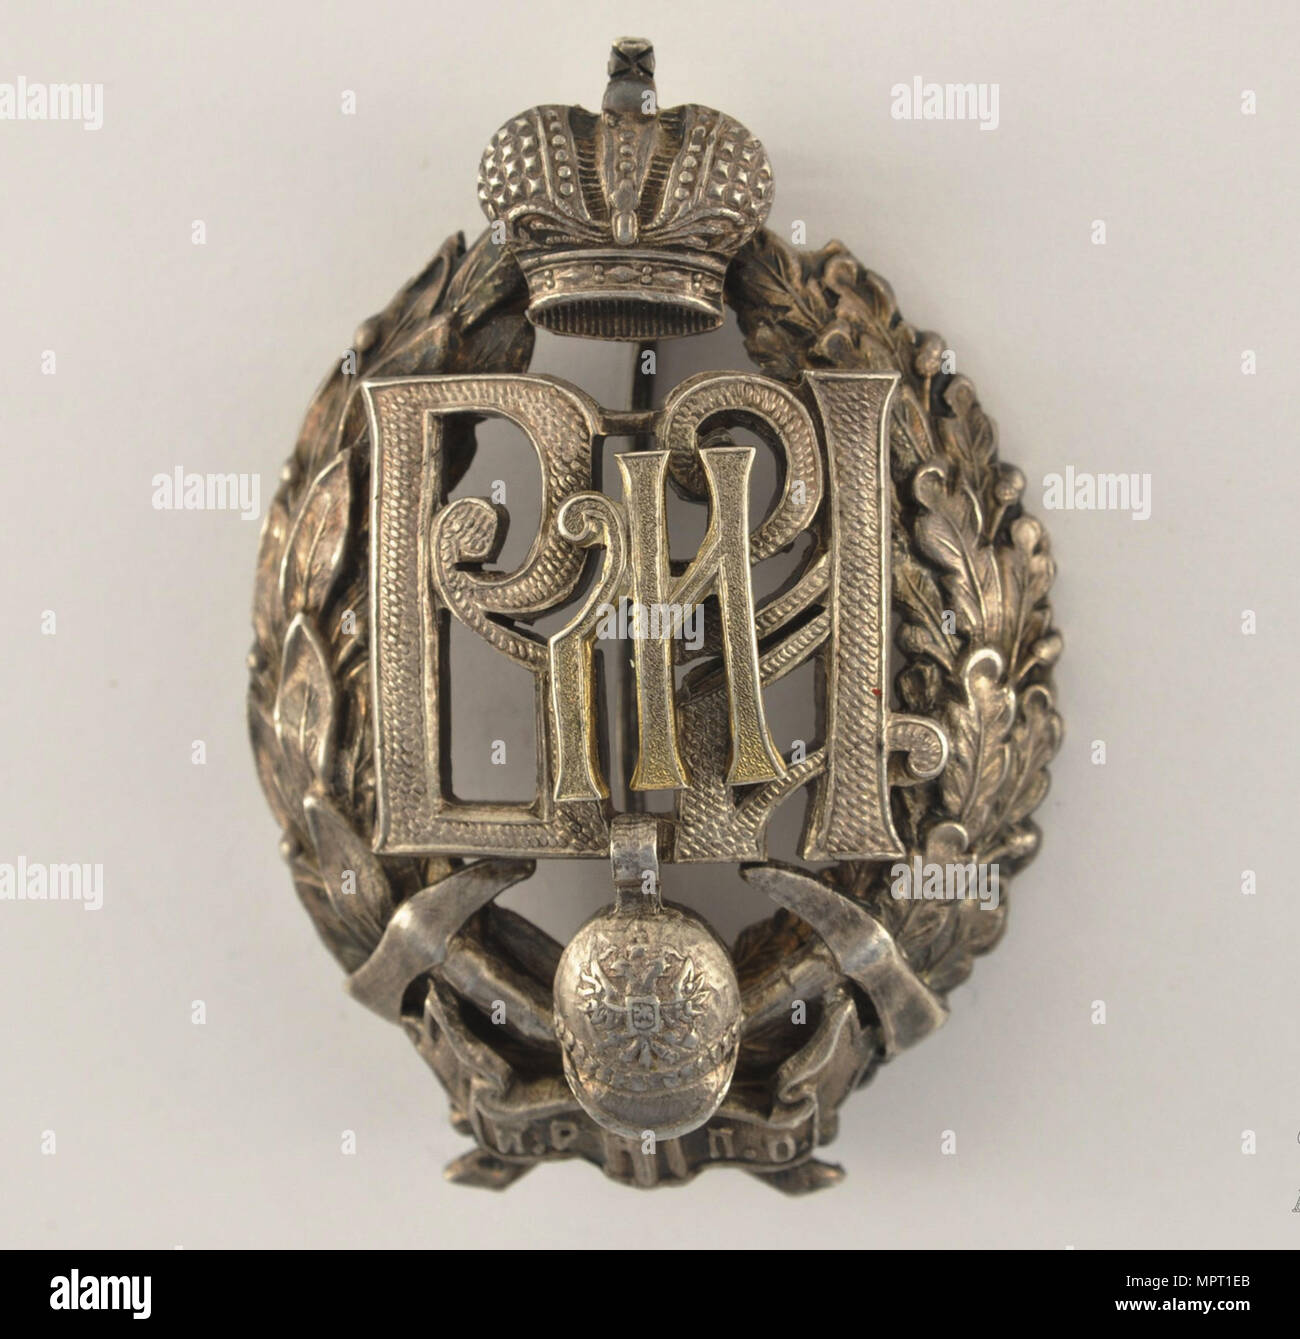 Insignia del premio de la sociedad de Bomberos de Imperial Rusa, comienzos del 20 cen. Foto de stock